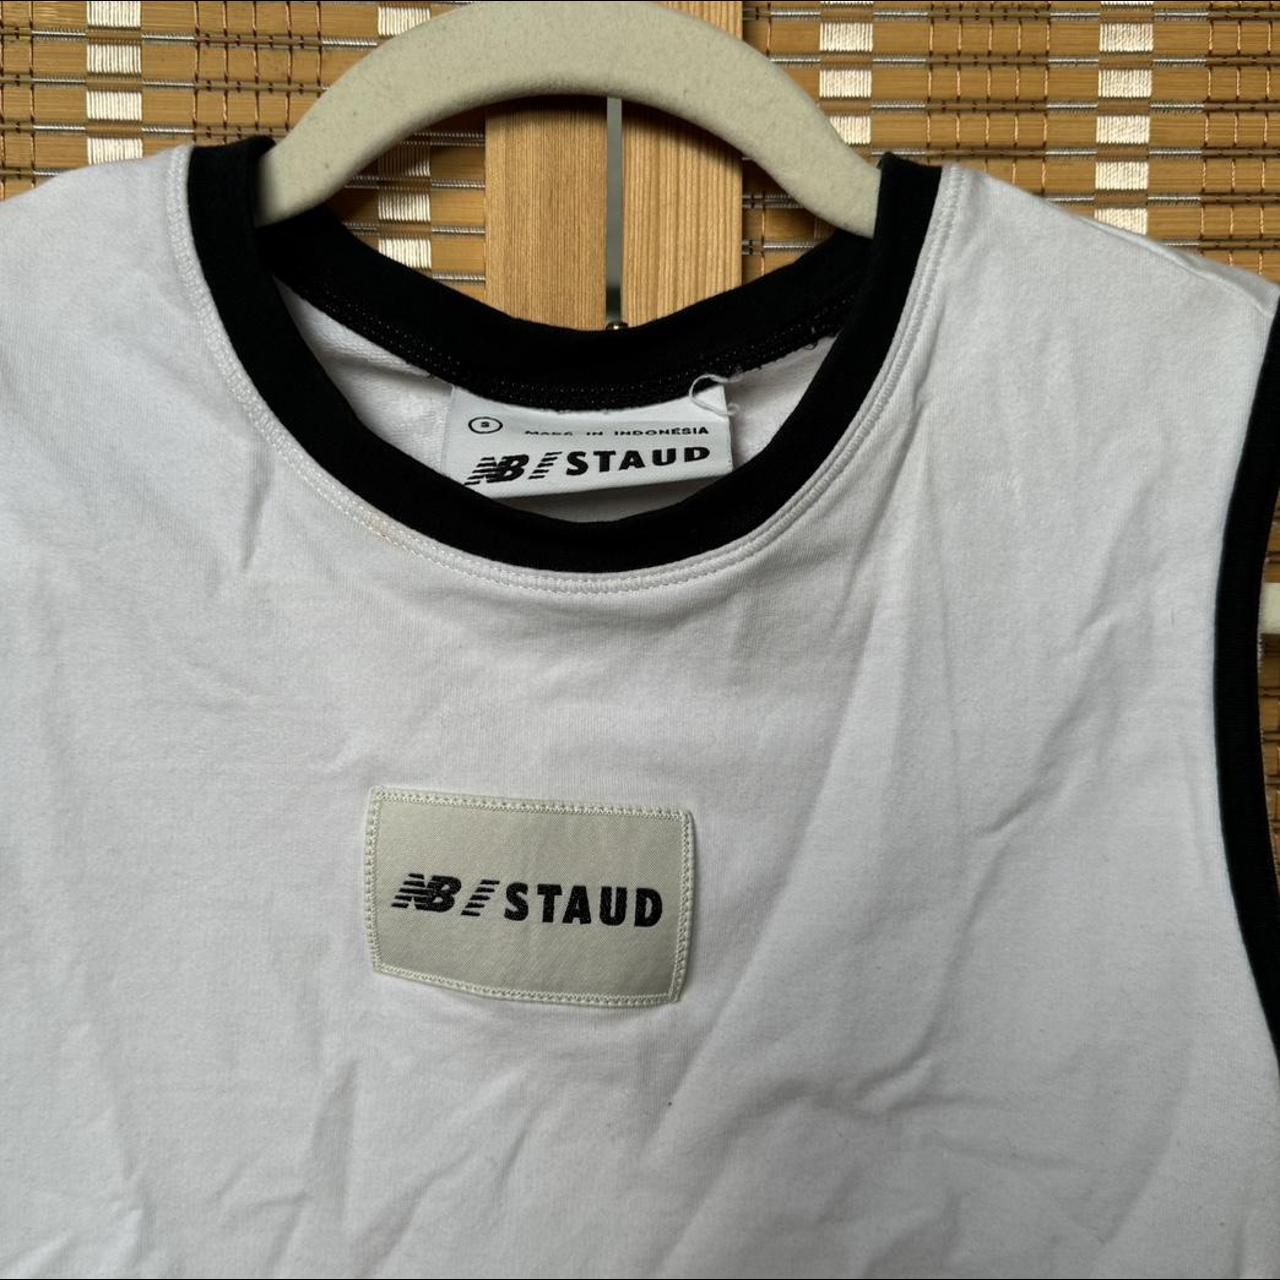 New Balance Women's White T-shirt (3)